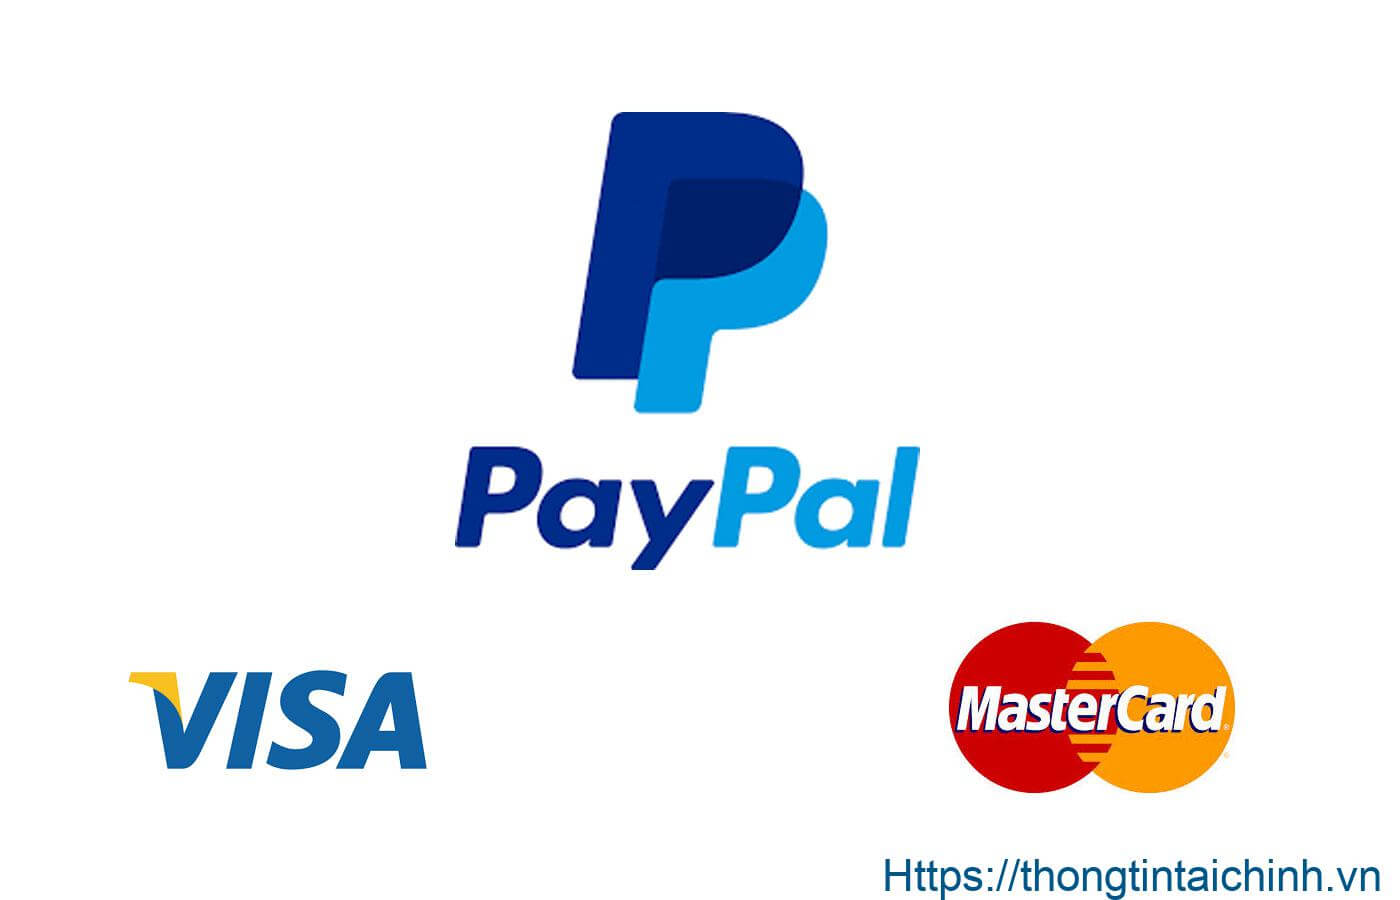 Bạn biết gì về cổng thanh toán trực tuyến Paypal?